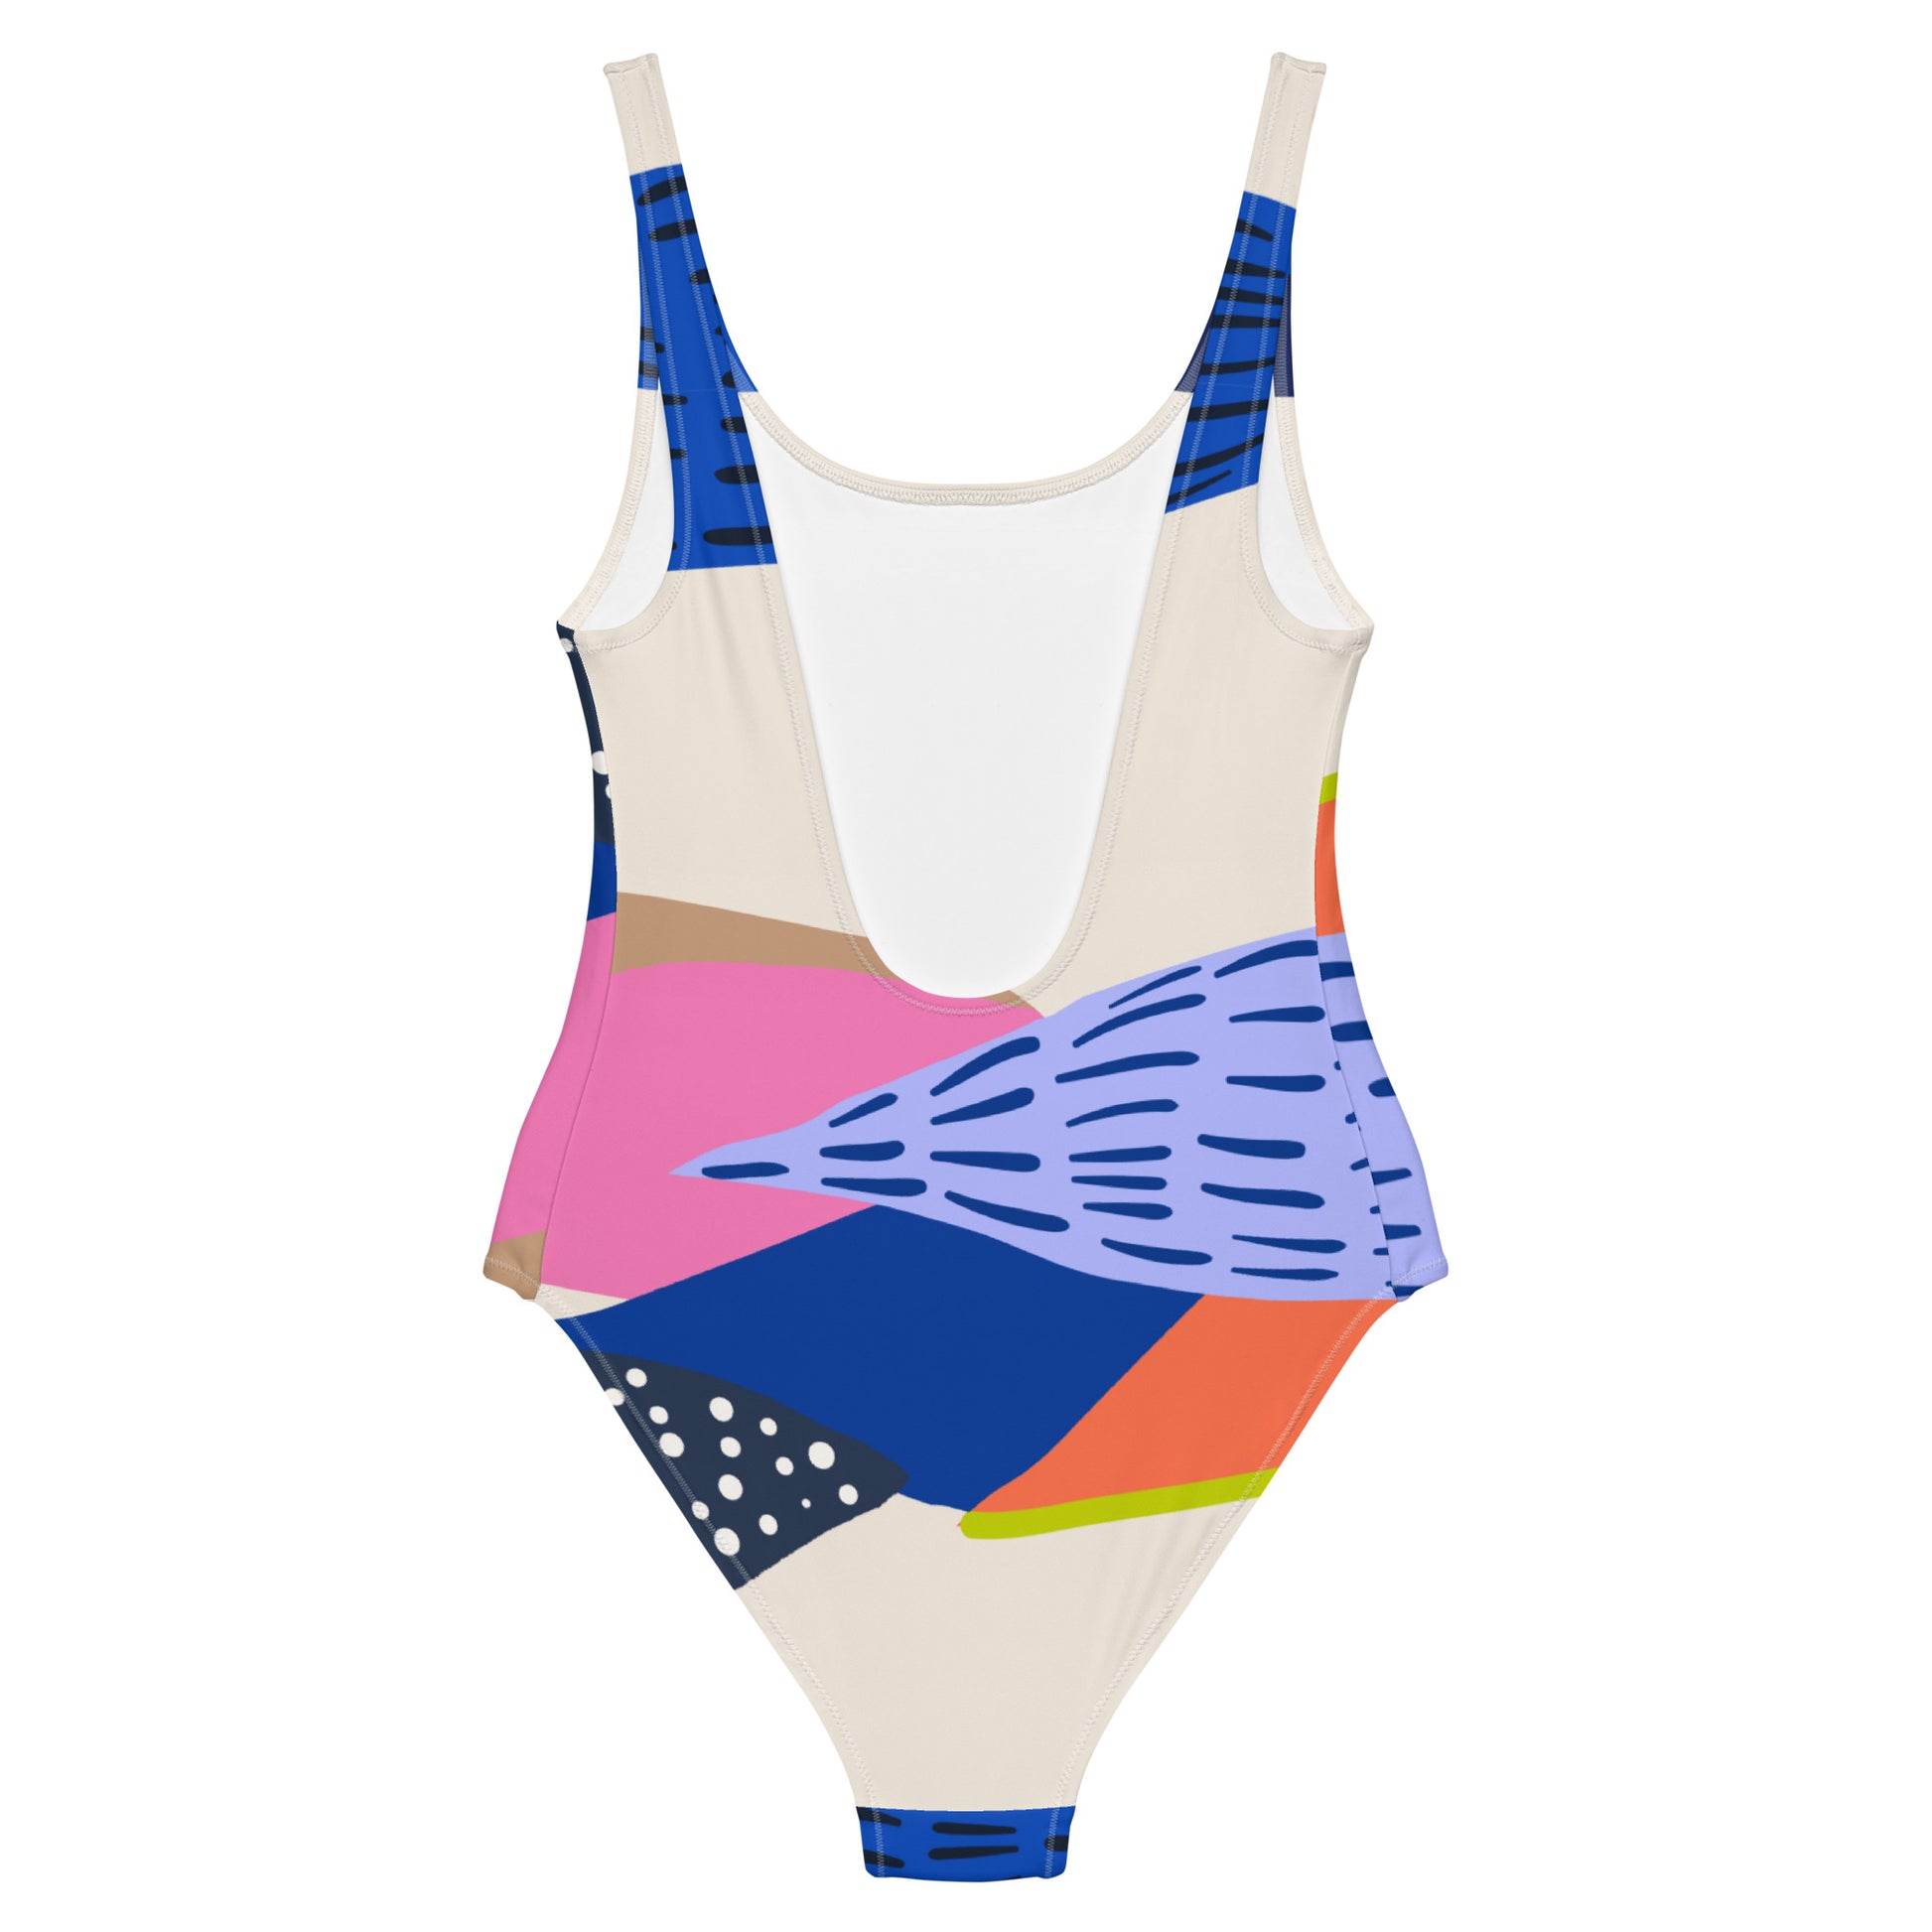 Merilevä - One-Piece Swimsuit - Swimwear- Print N Stuff - [designed in Turku Finland]